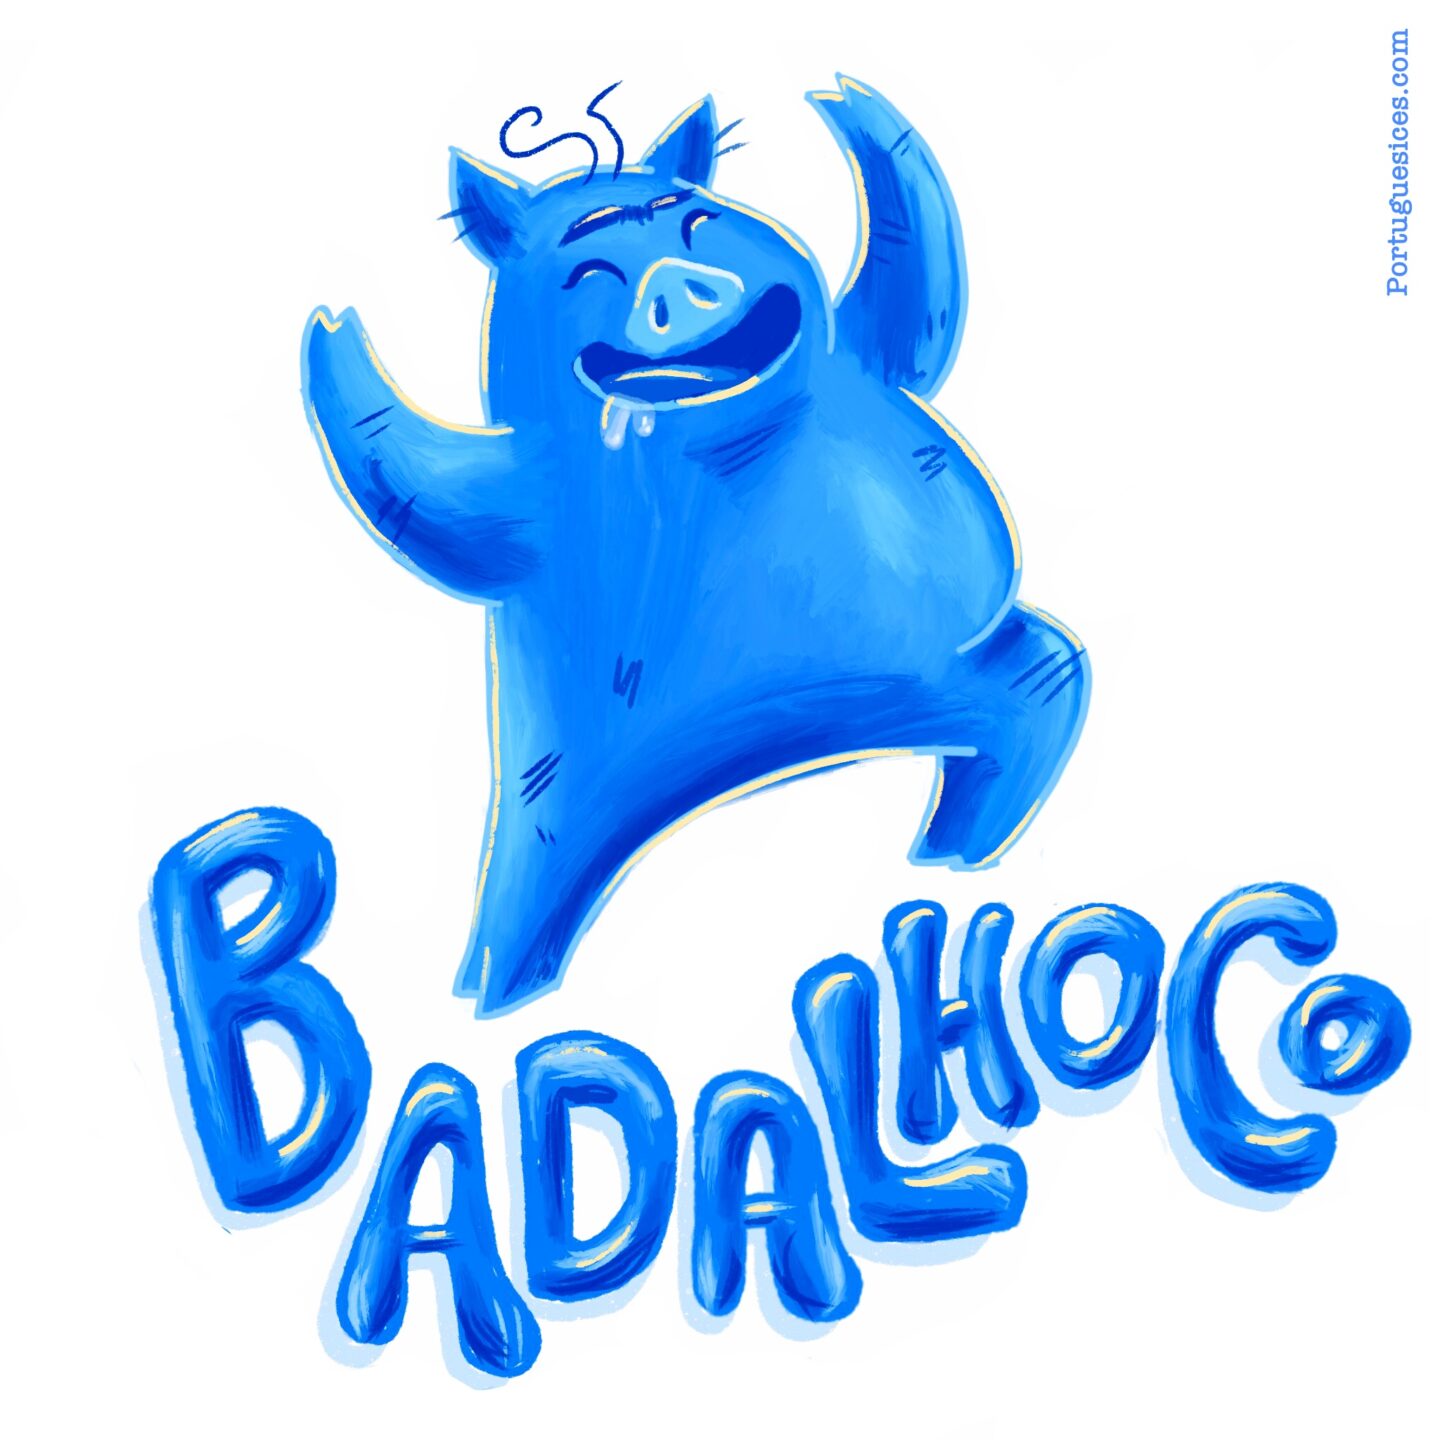 Badalhoco